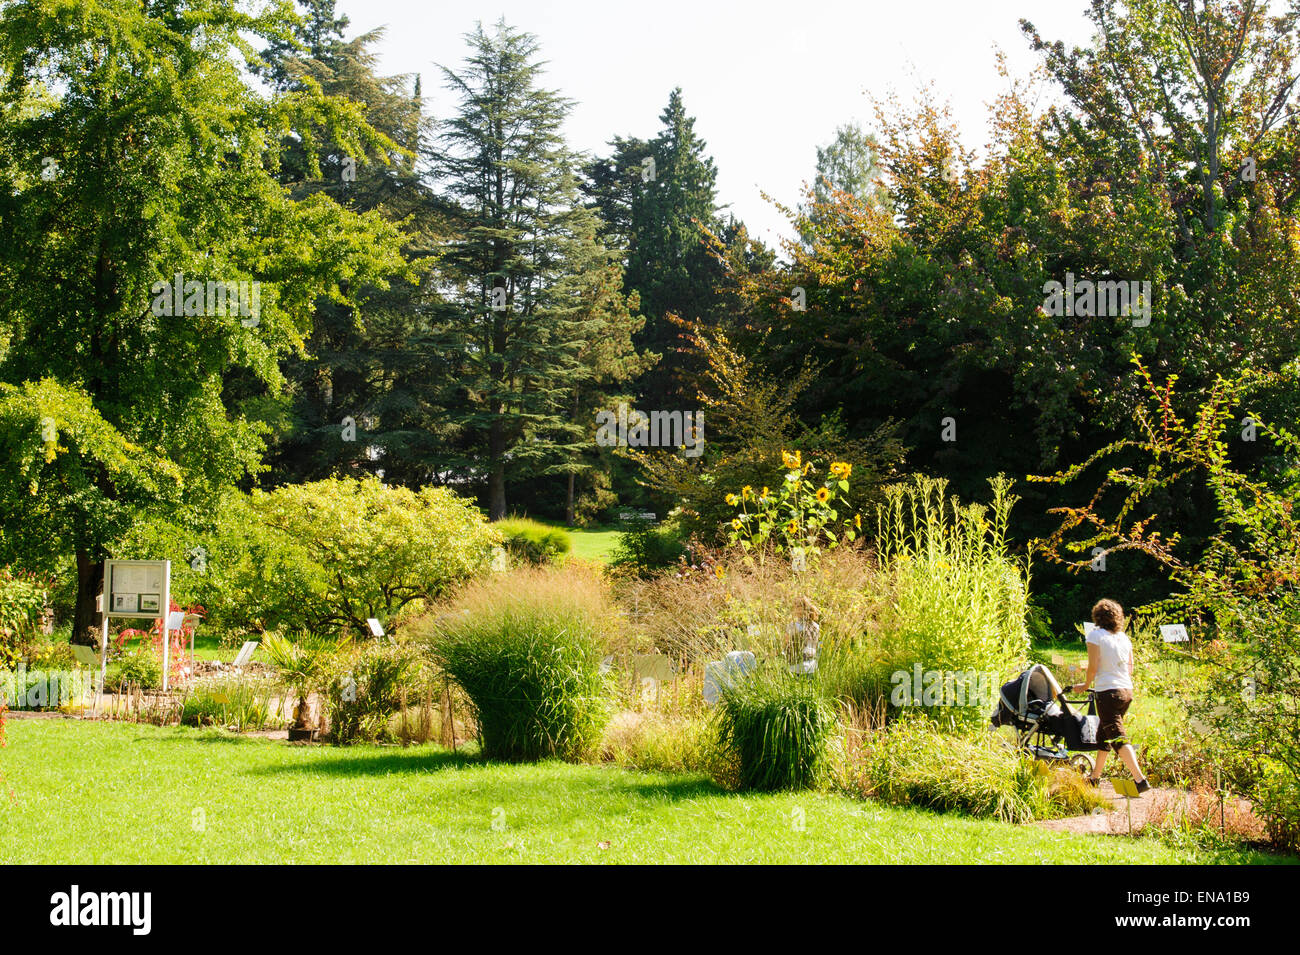 Botanischer Garten, Darmstadt, Hessen, Deutschland | Botanical Gardens, Darmstadt, Germany Stock Photo